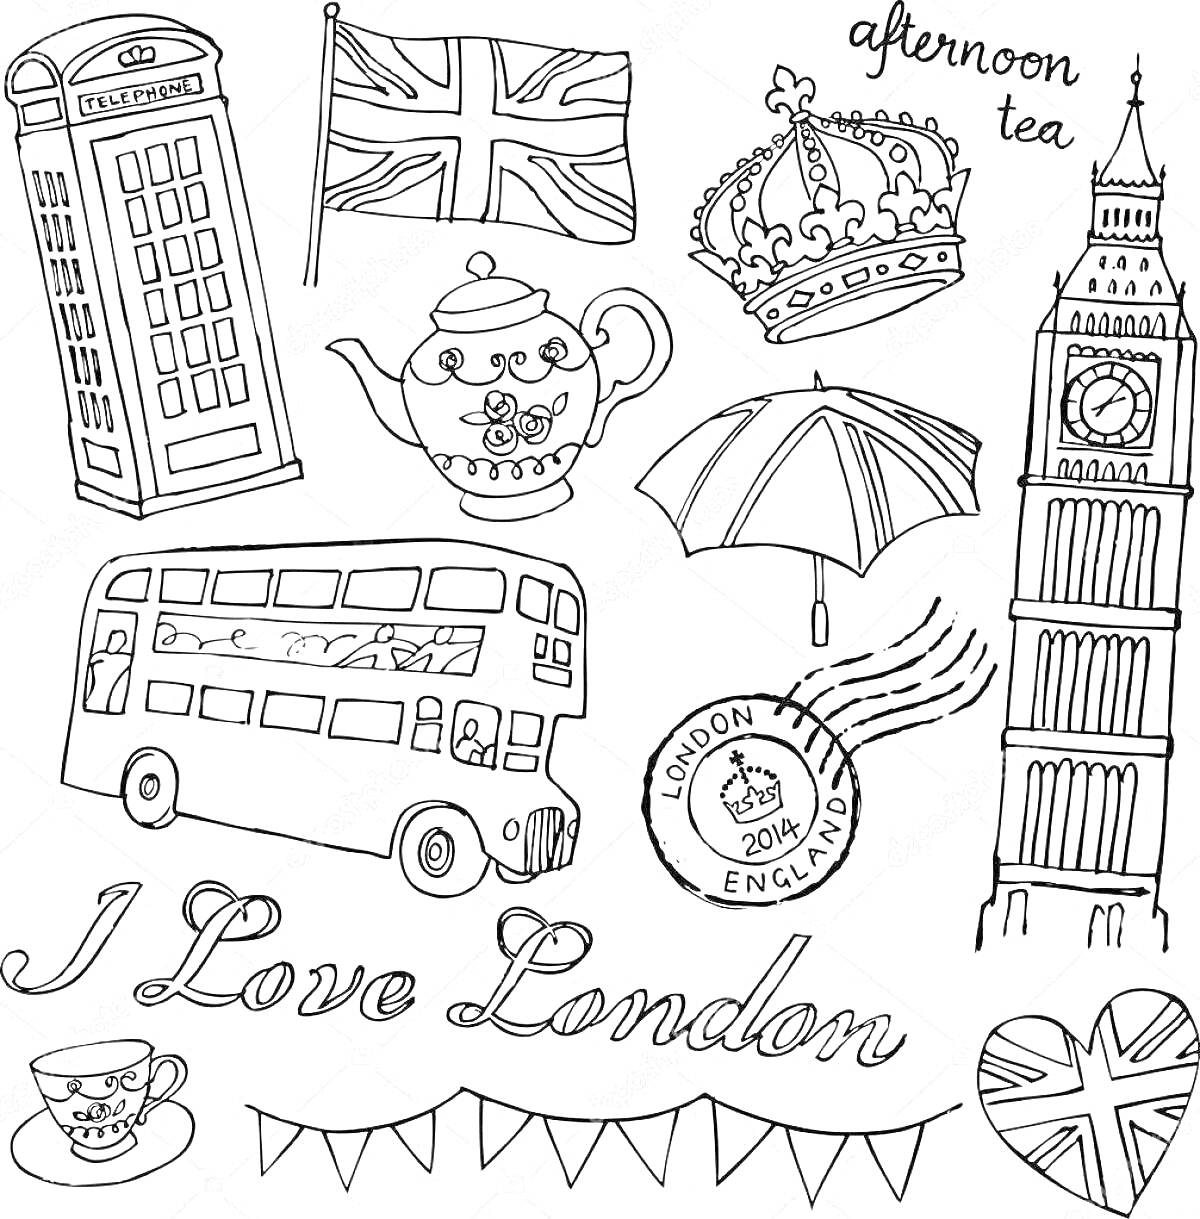 На раскраске изображено: Лондон, Телефонная будка, Флаг, Корона, Автобус, Чайный набор, Гирлянда